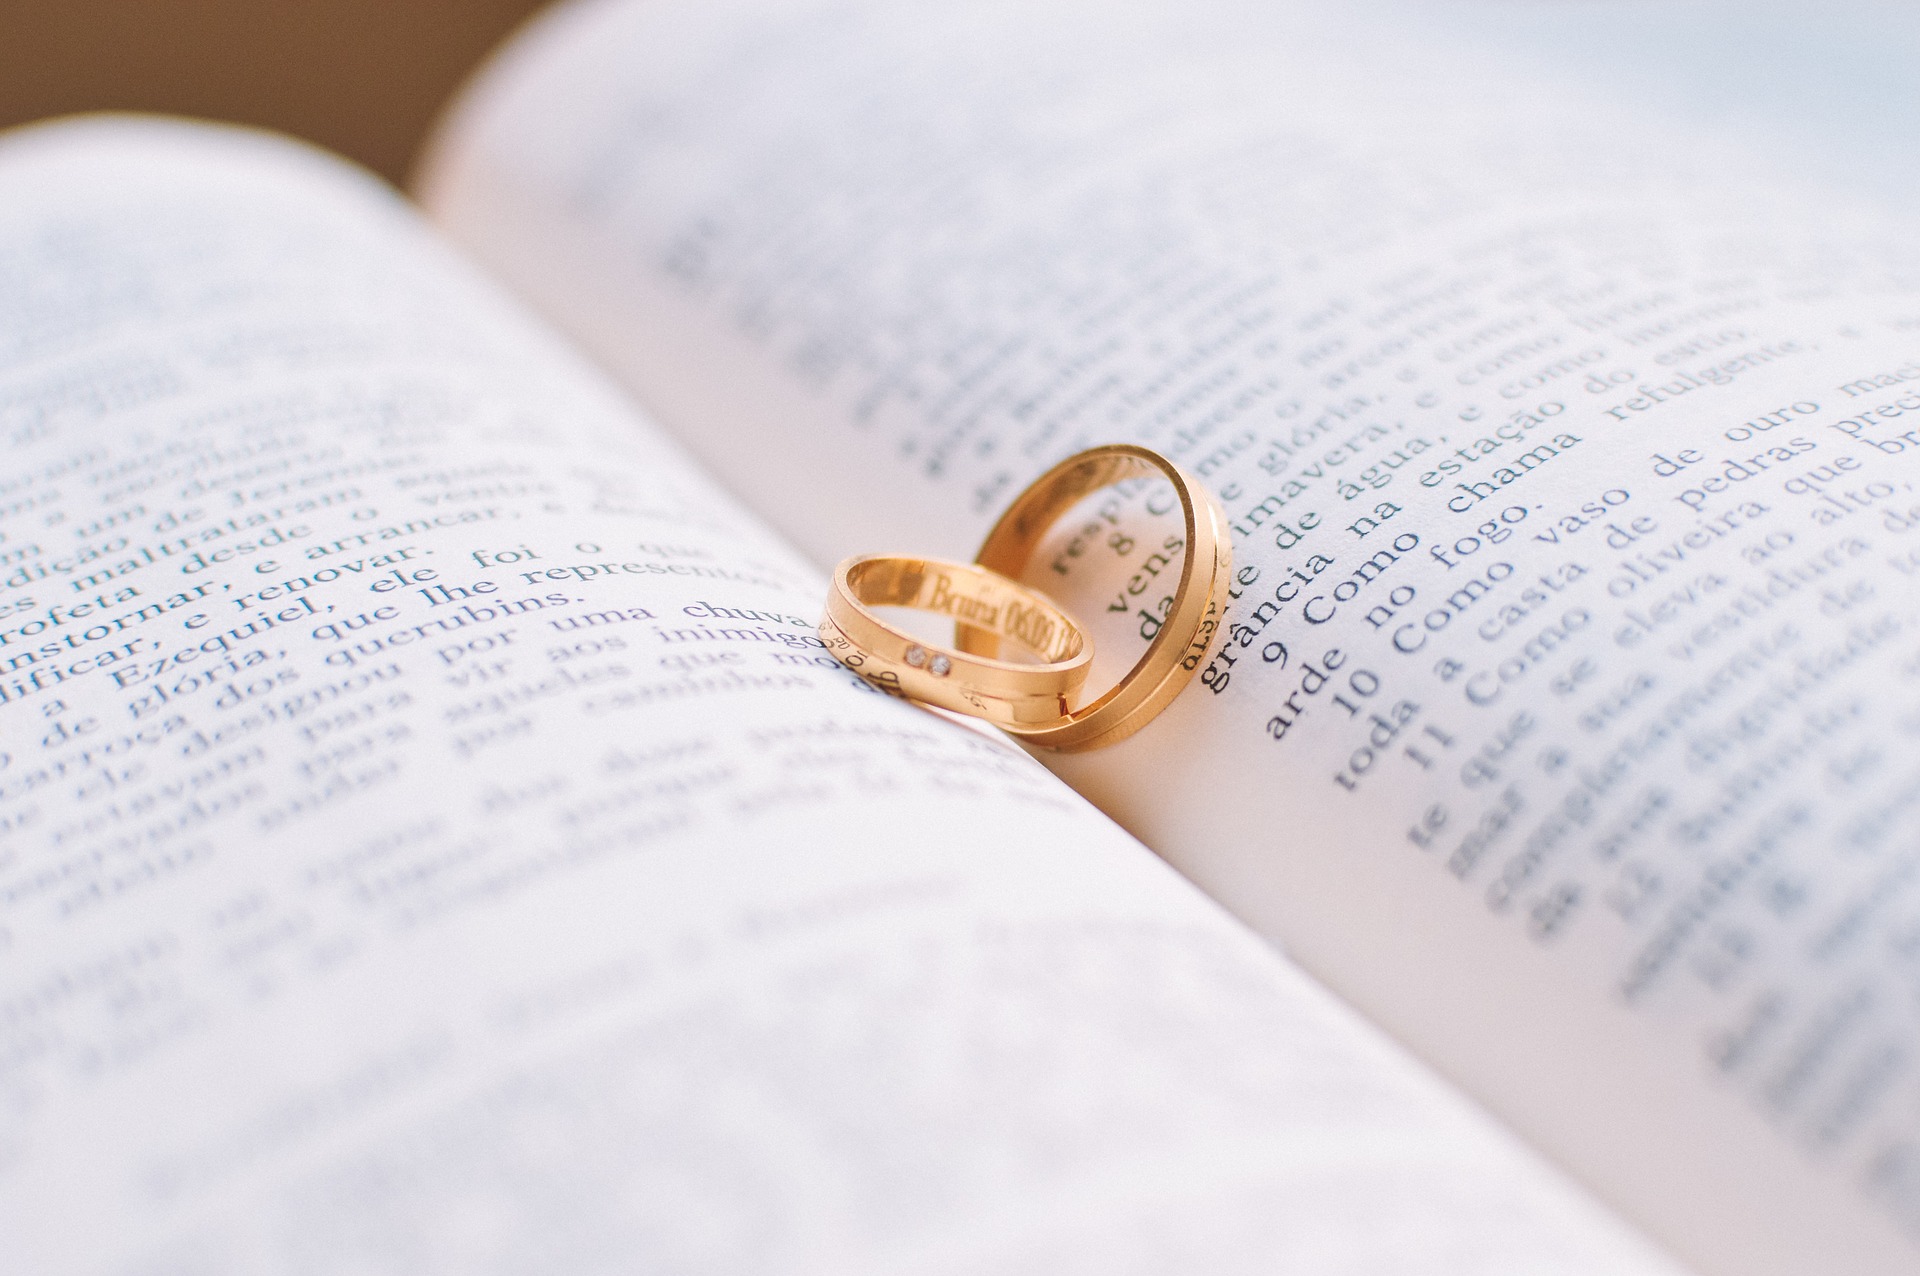 Le Mariage dans la Bible